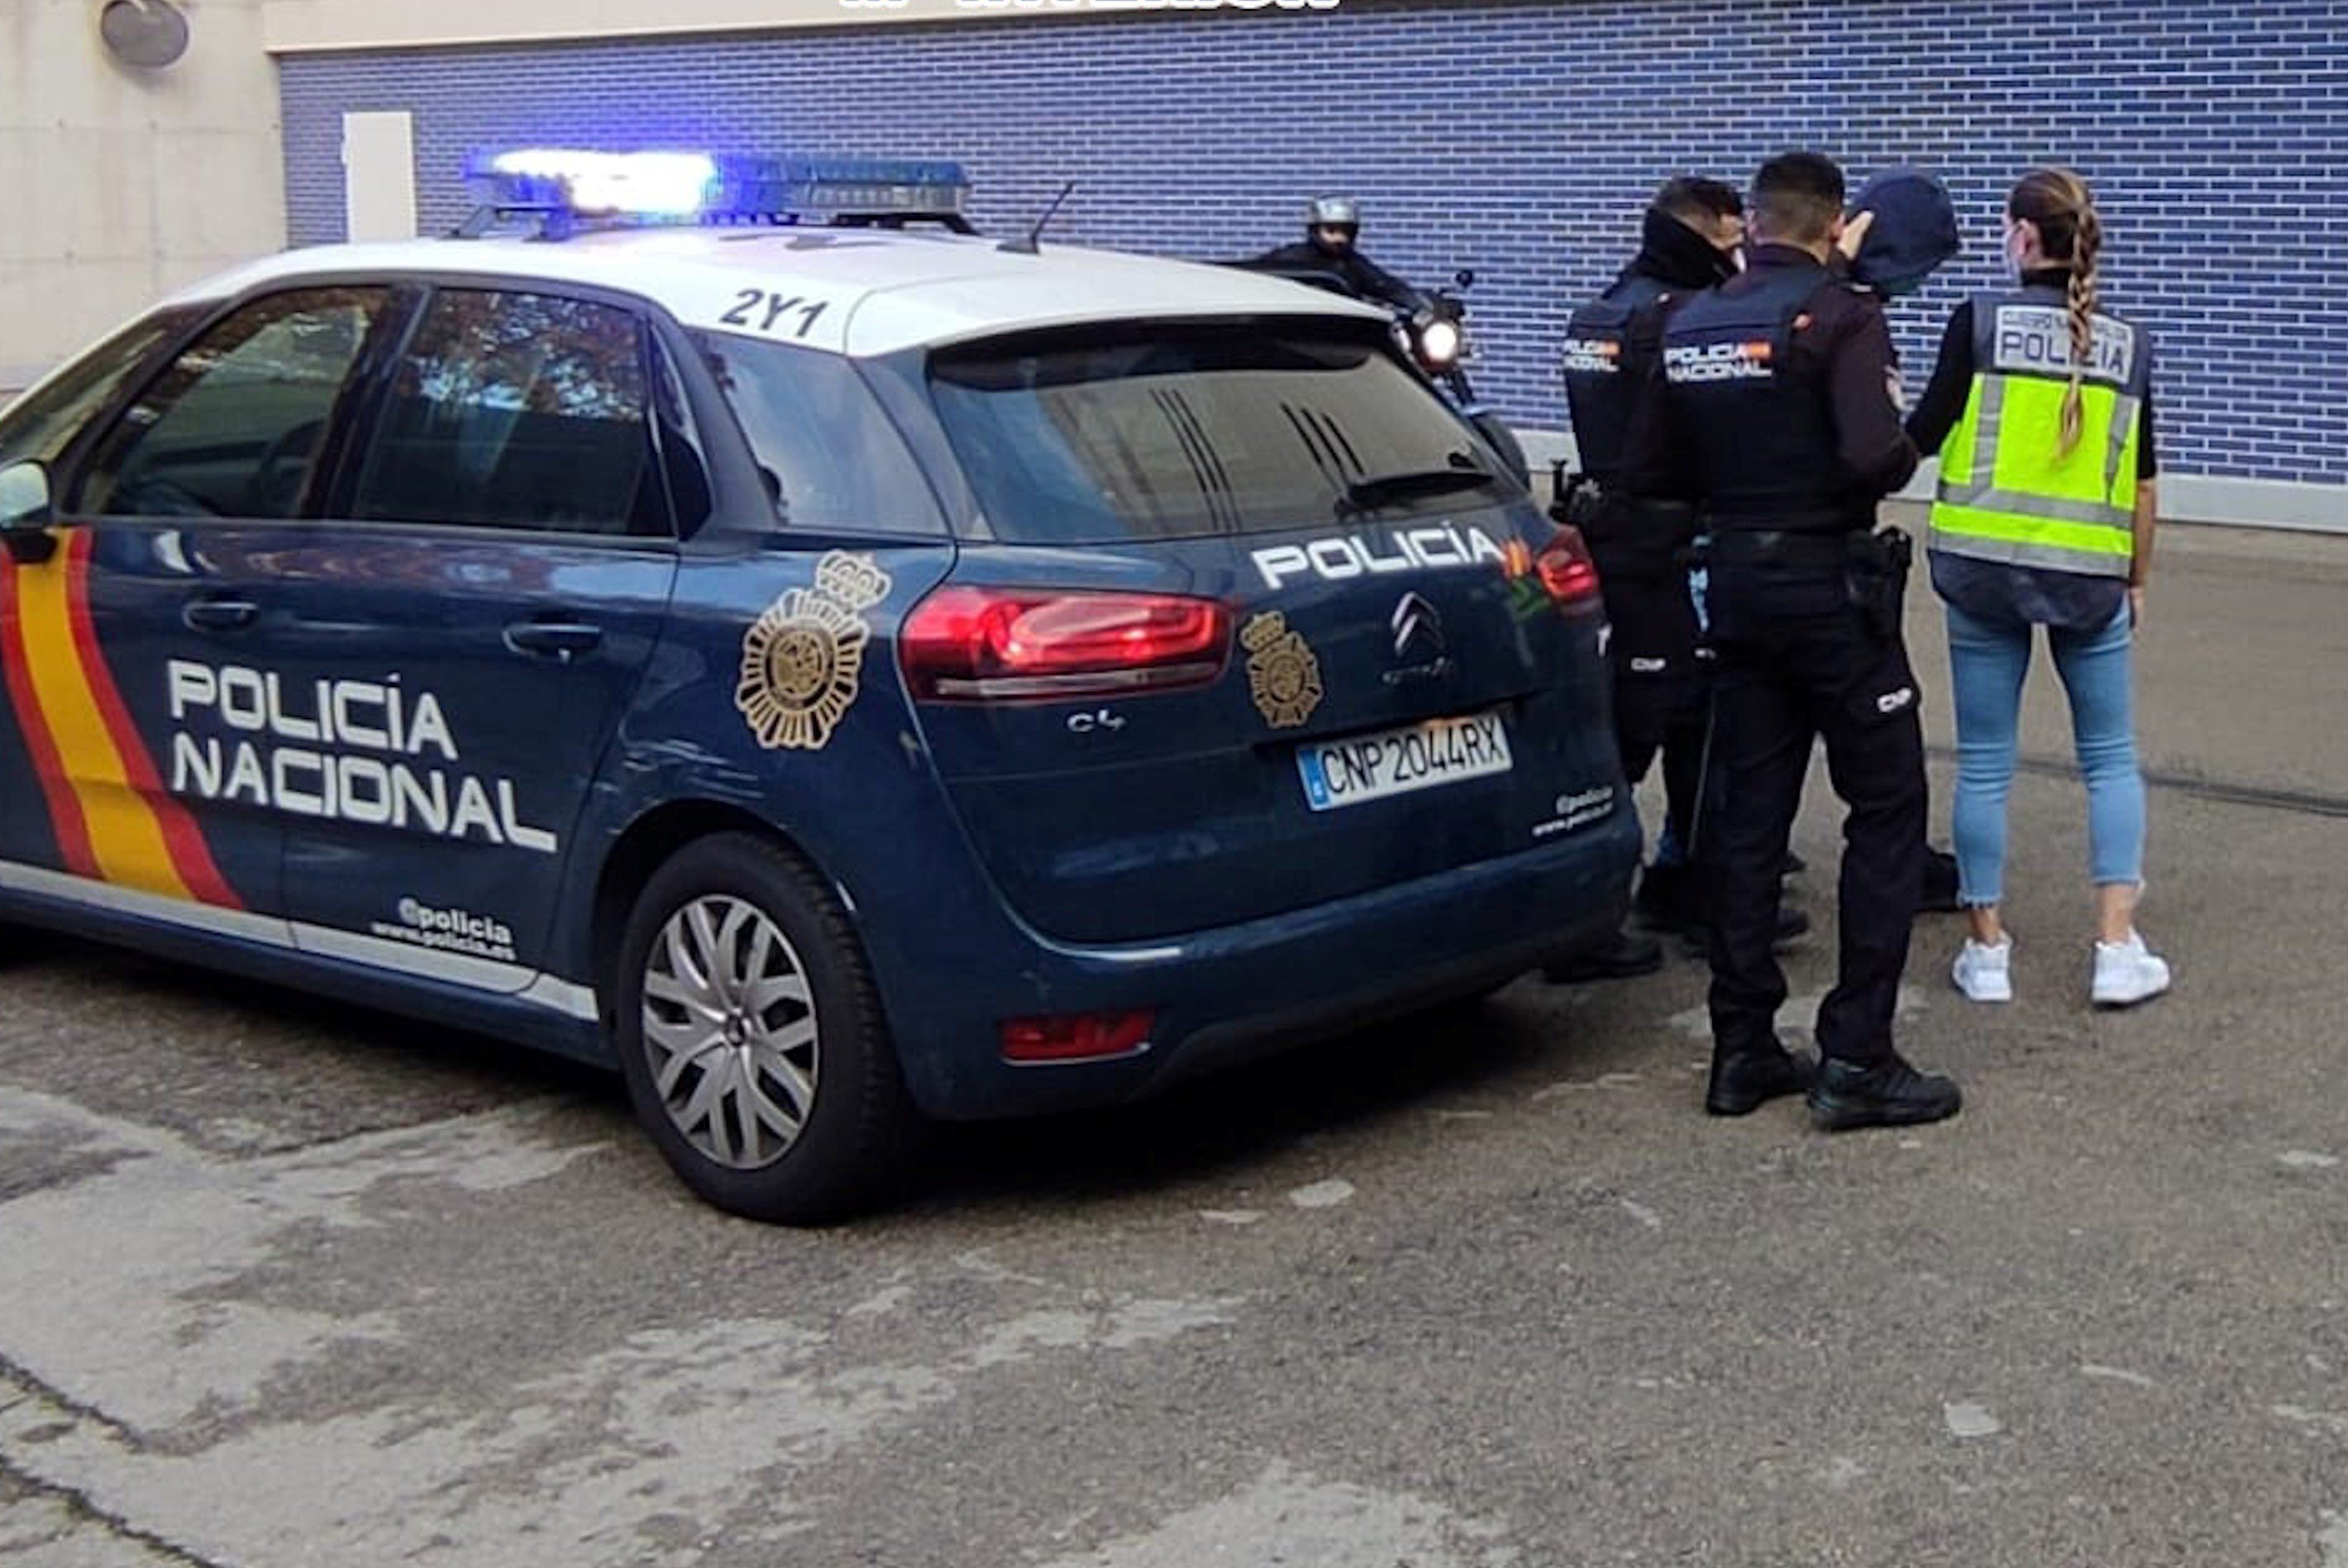 Detenció del fugitiu d'origen albanès a Barcelona pels agents de la Policia Nacional / POLICIA NACIONAL